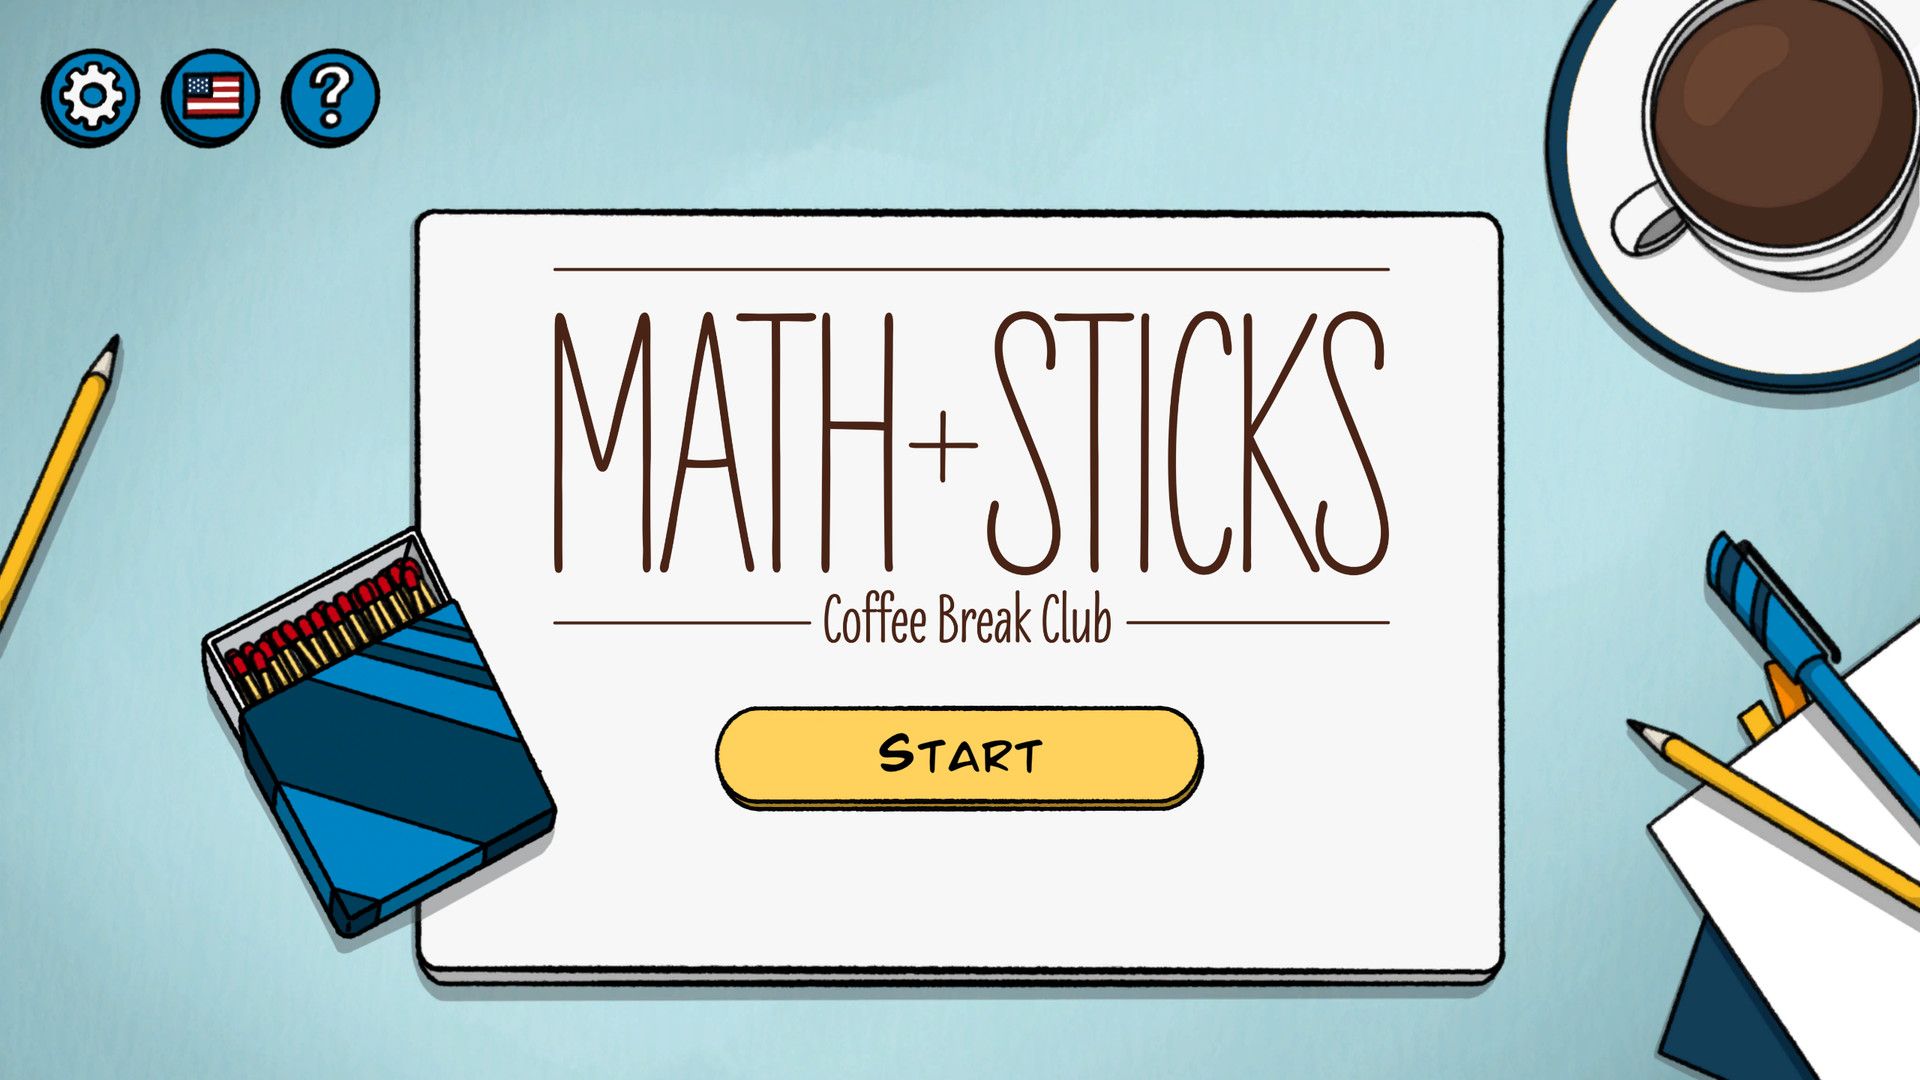 Math + Sticks – Coffee Break Club Guía de todas las soluciones